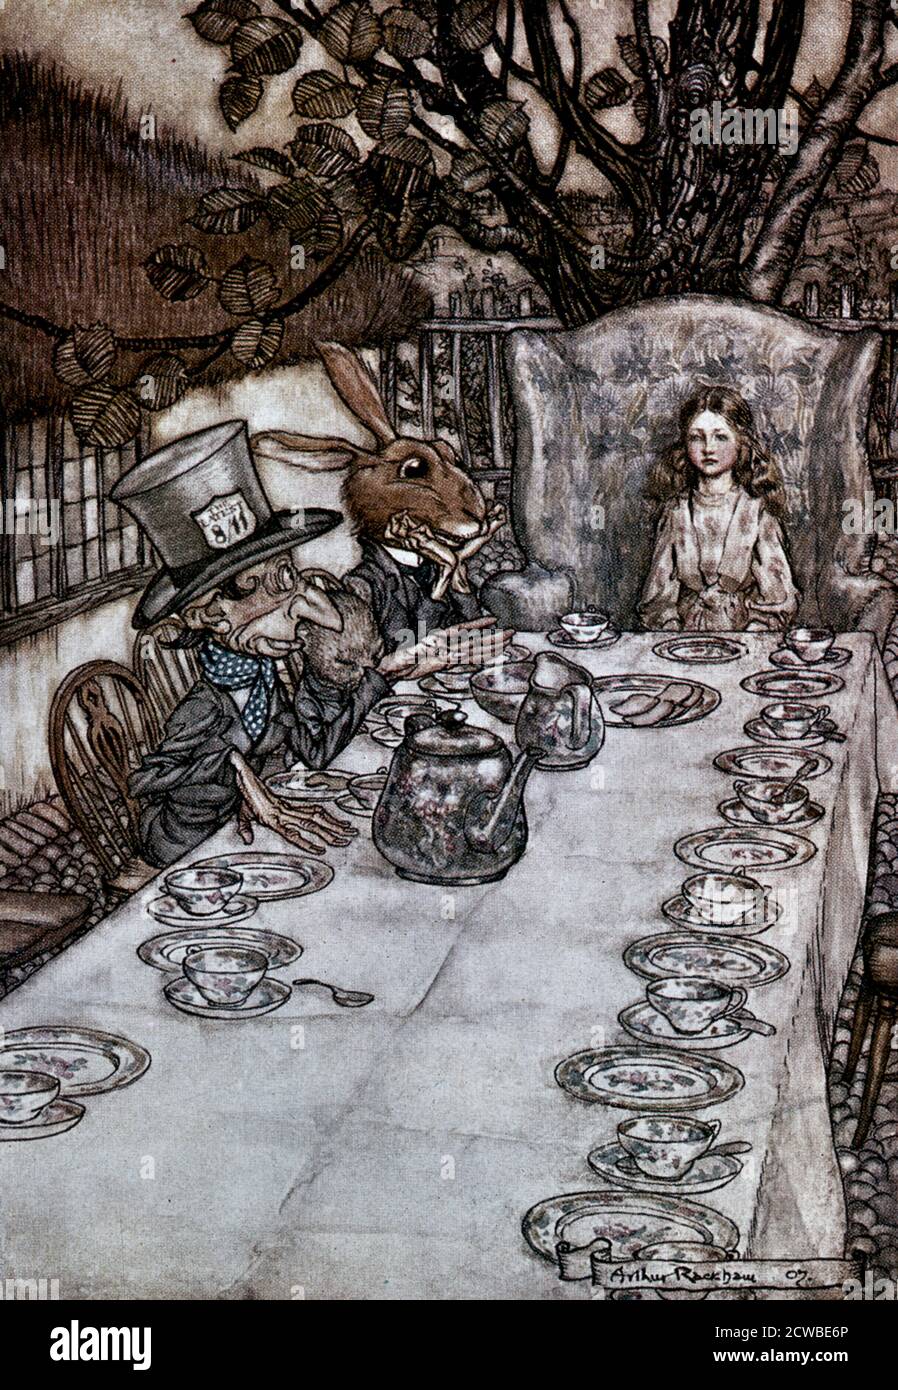 Alice im Wunderland', 1917 Künstler: Arthur Rackham. Alice's Adventures in Wonderland ist ein Werk der Kinderliteratur des britischen Mathematikers Lewis Carroll. Stockfoto